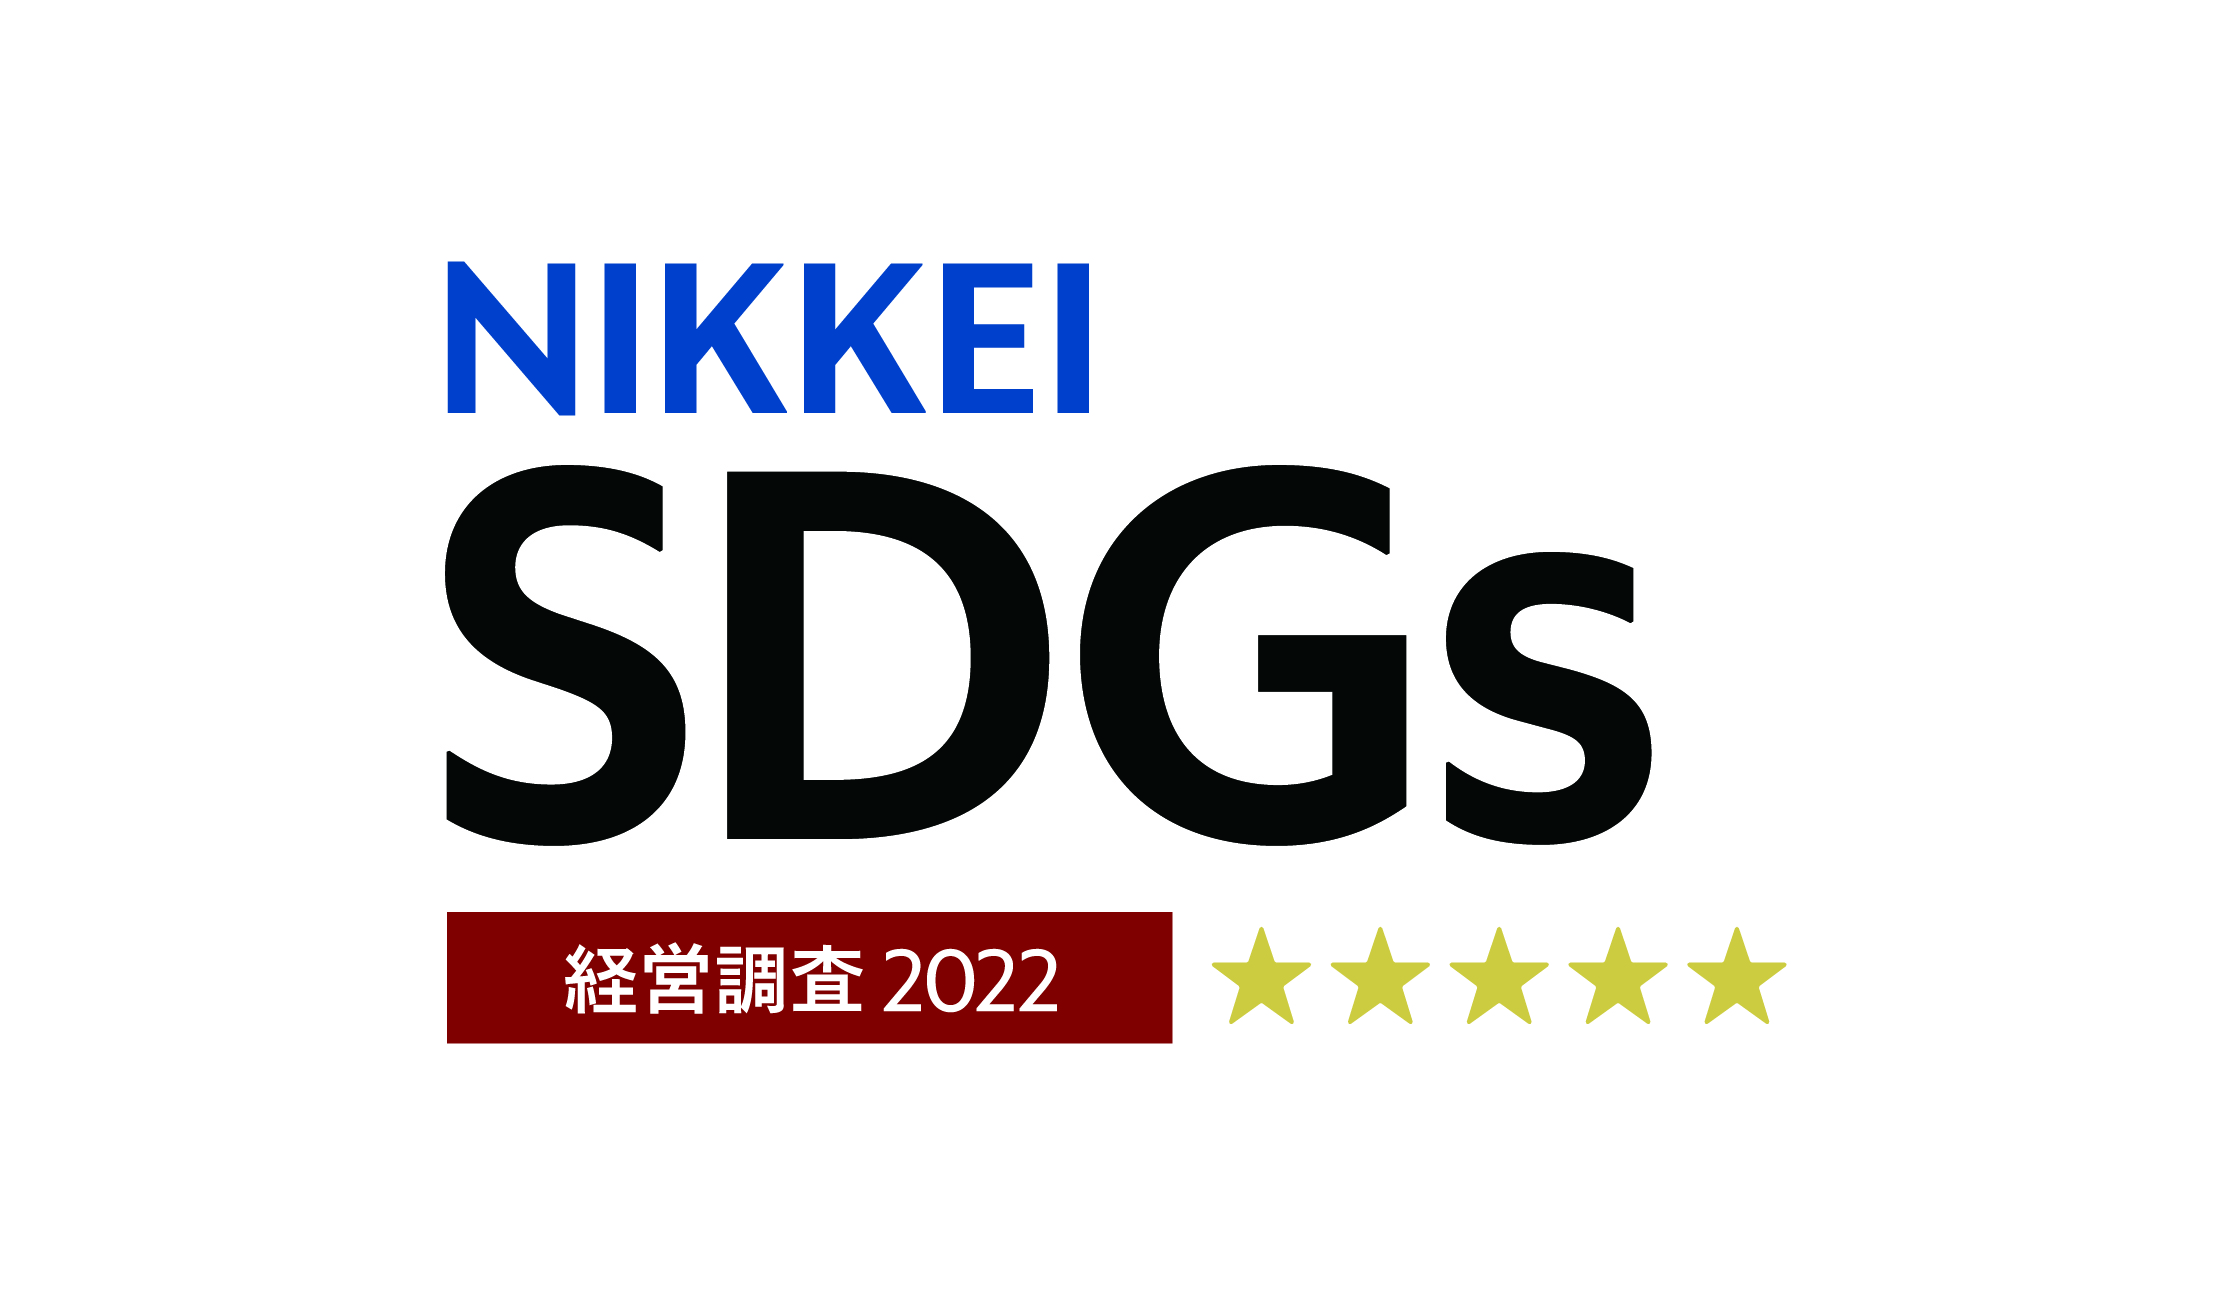 「第4回日経SDGs経営調査」で5星に認定